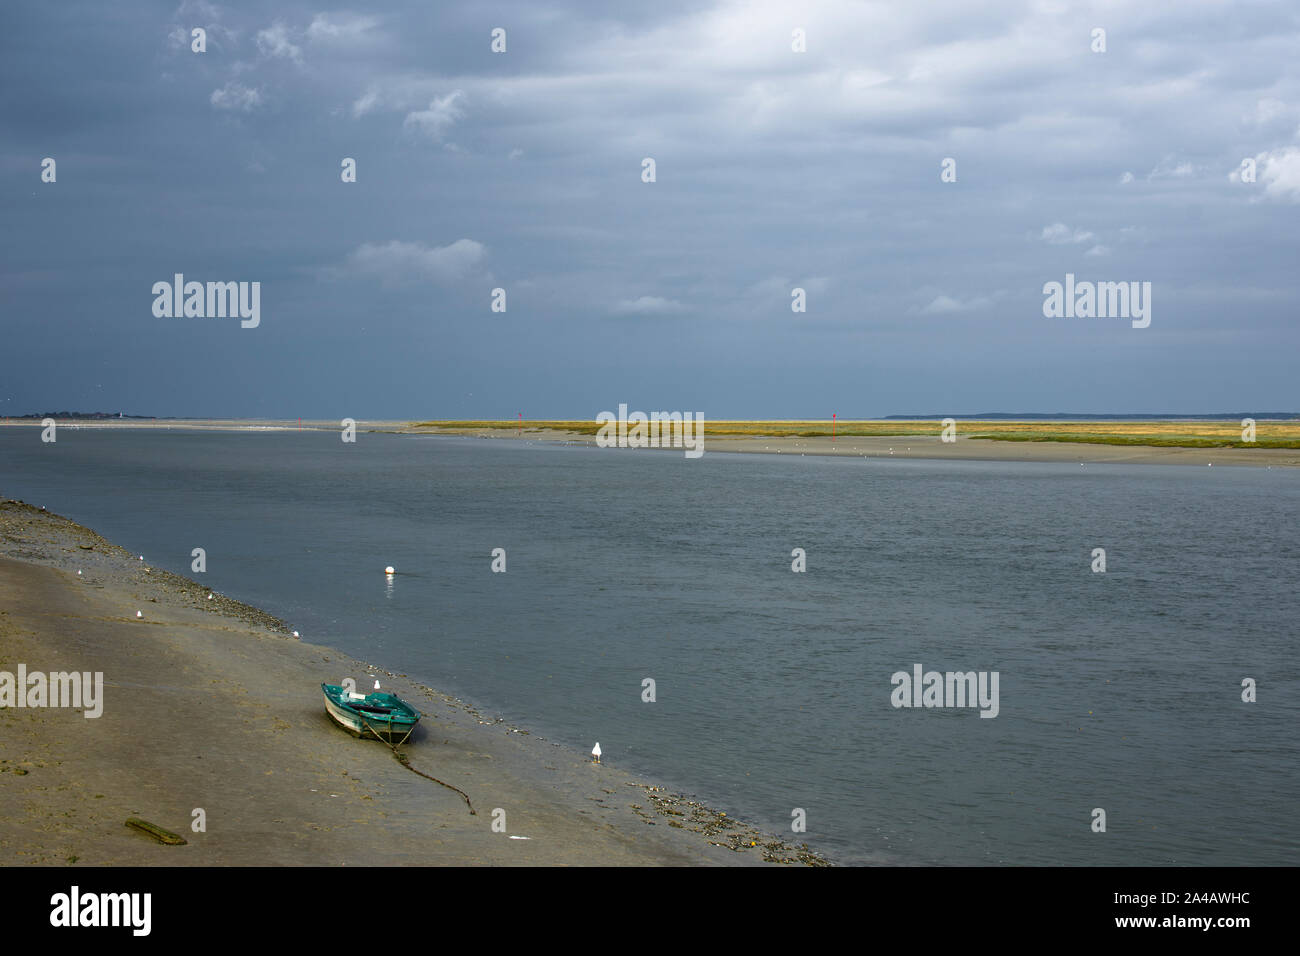 La baie de somme, kayak et voiliers, ciel nuageux, mer calme Stock Photo